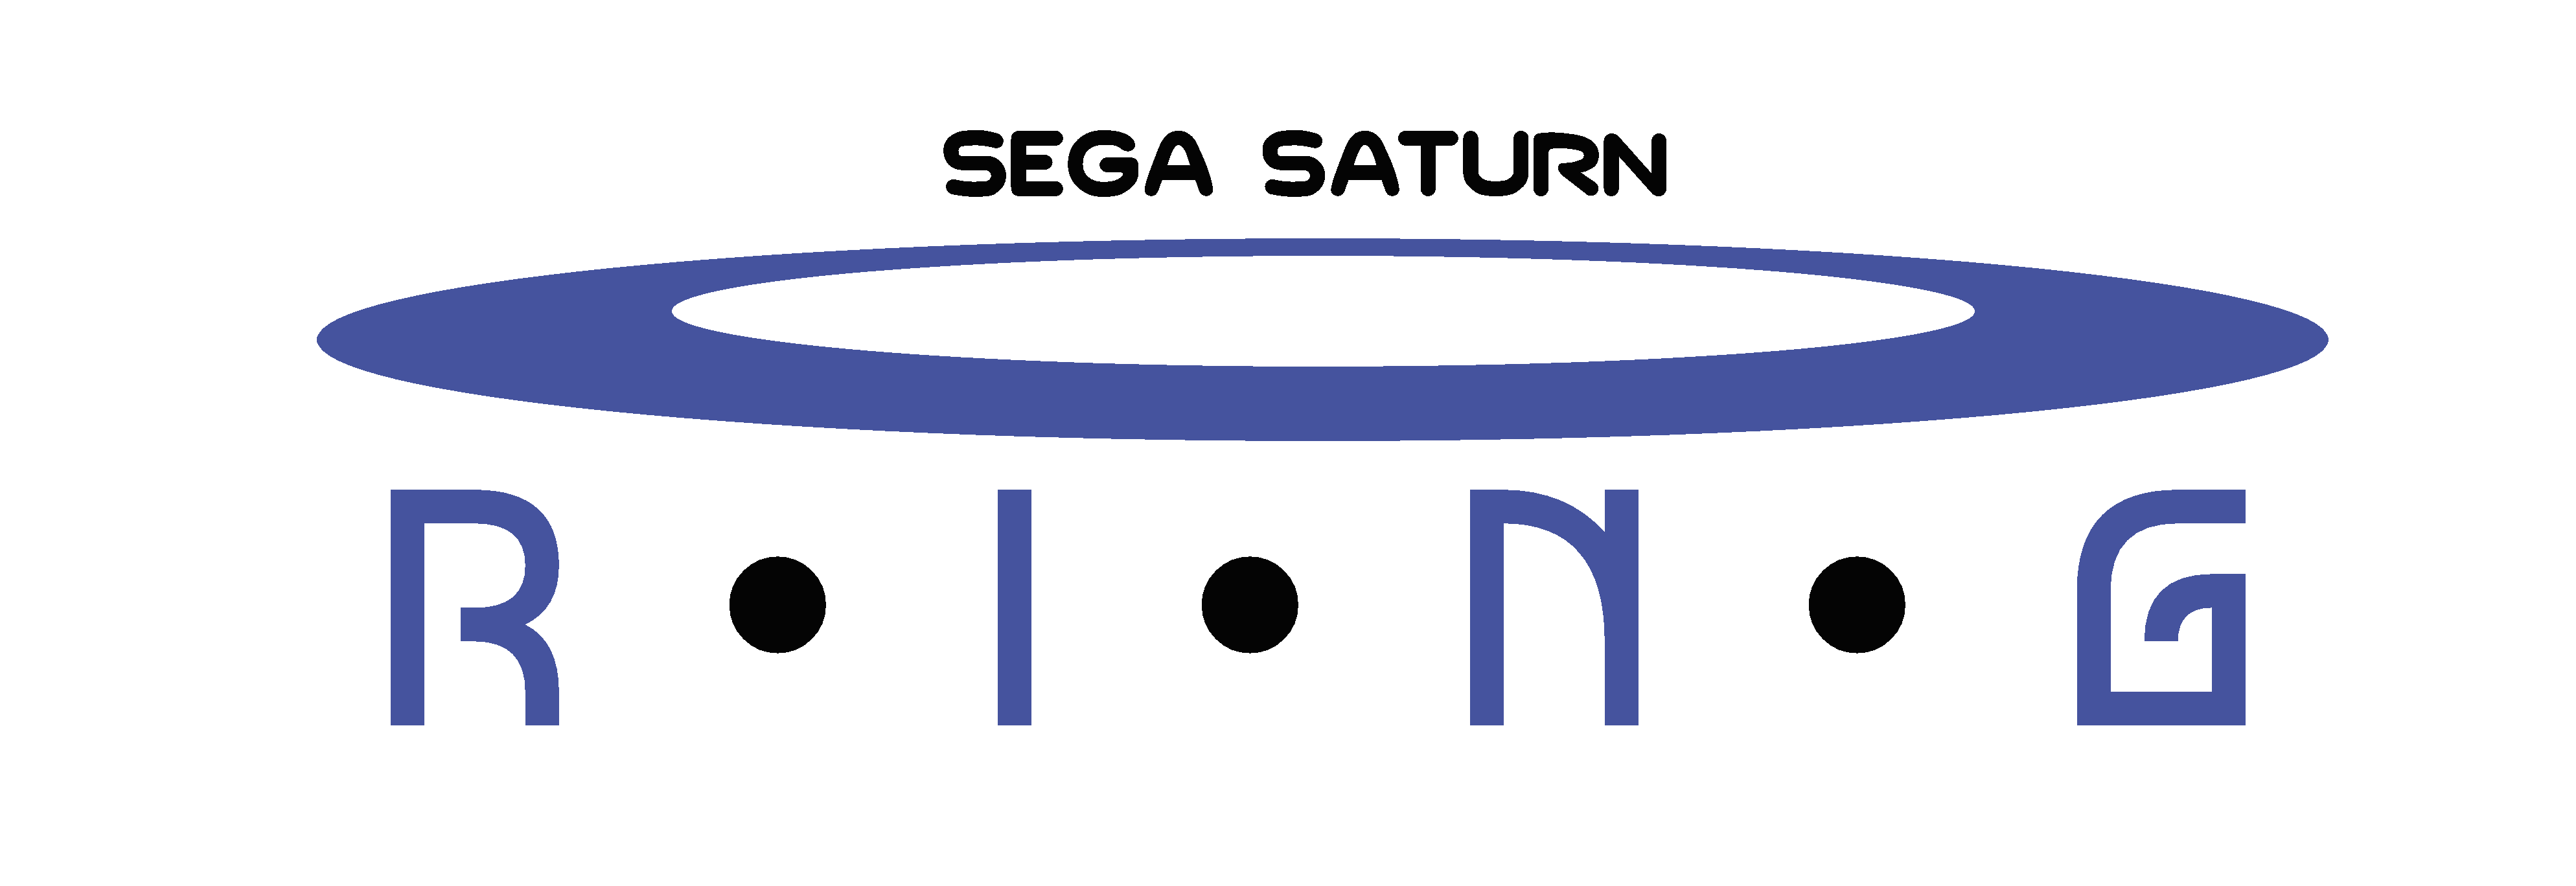 Sega Saturn Ring (US & Europe) logo.png